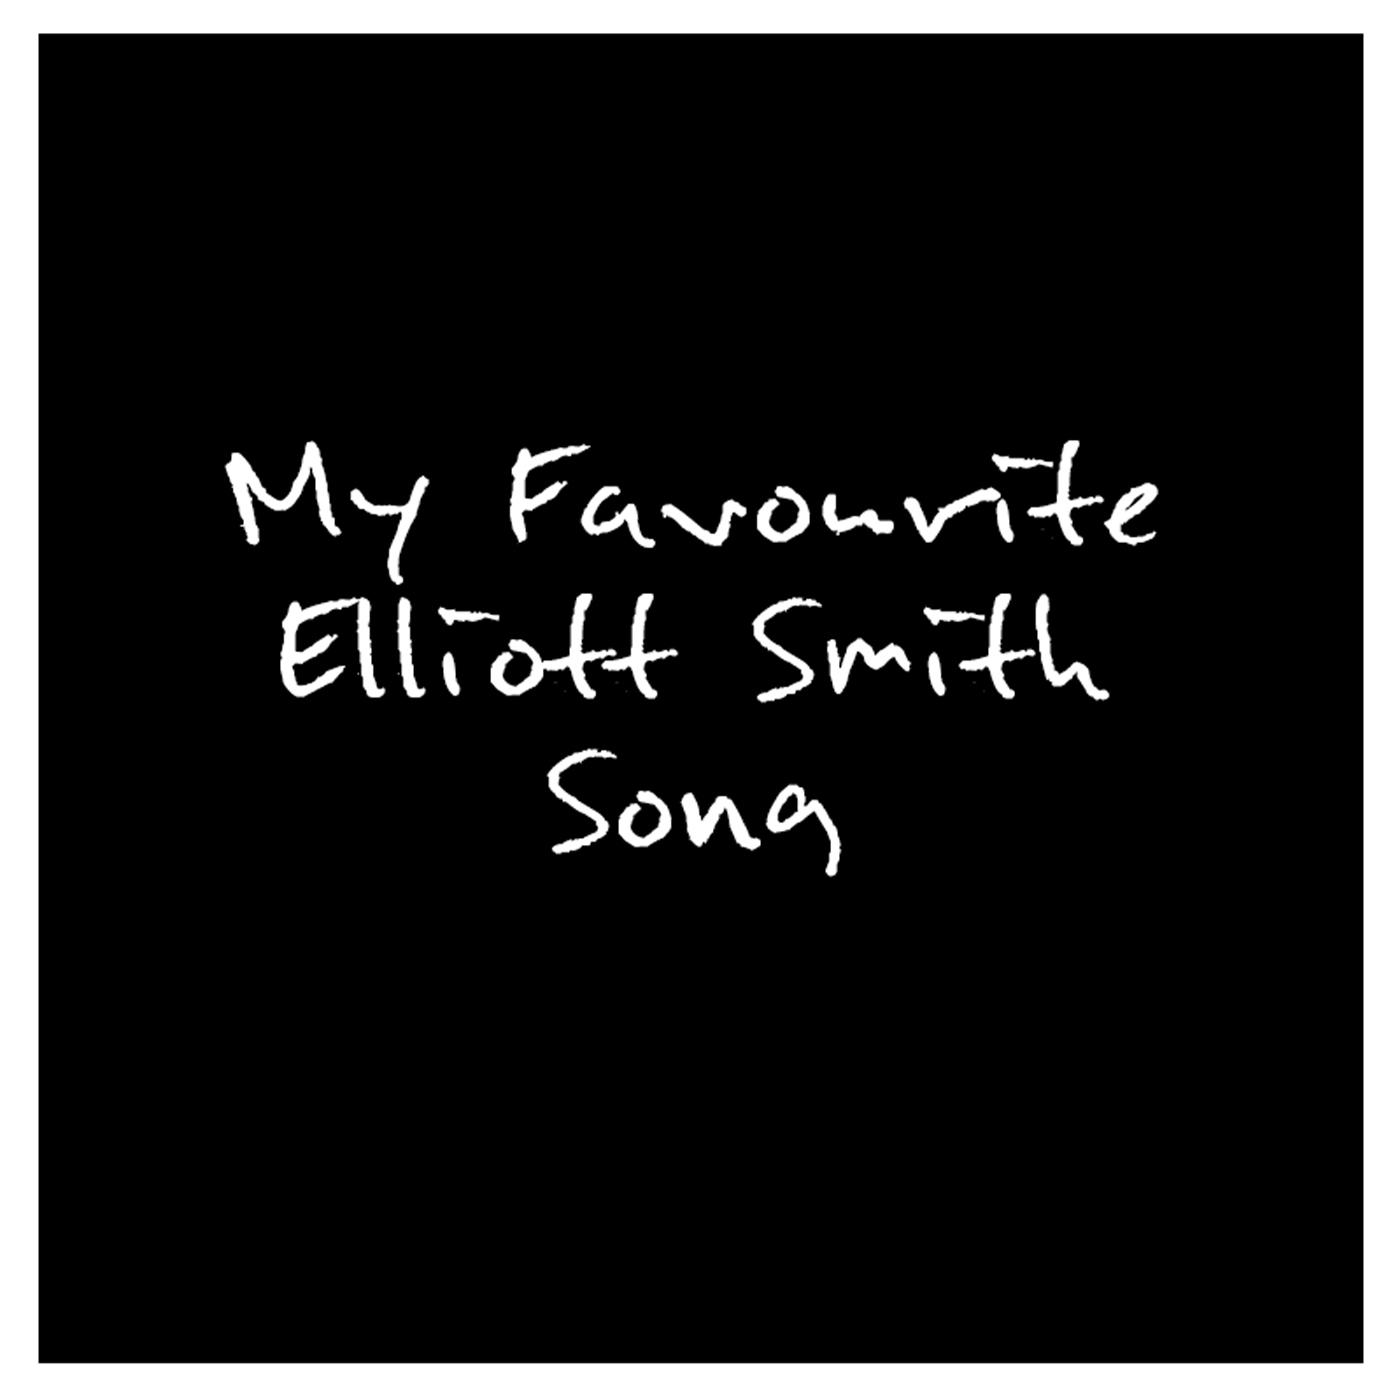 Elliott_Smith_podcast_logo